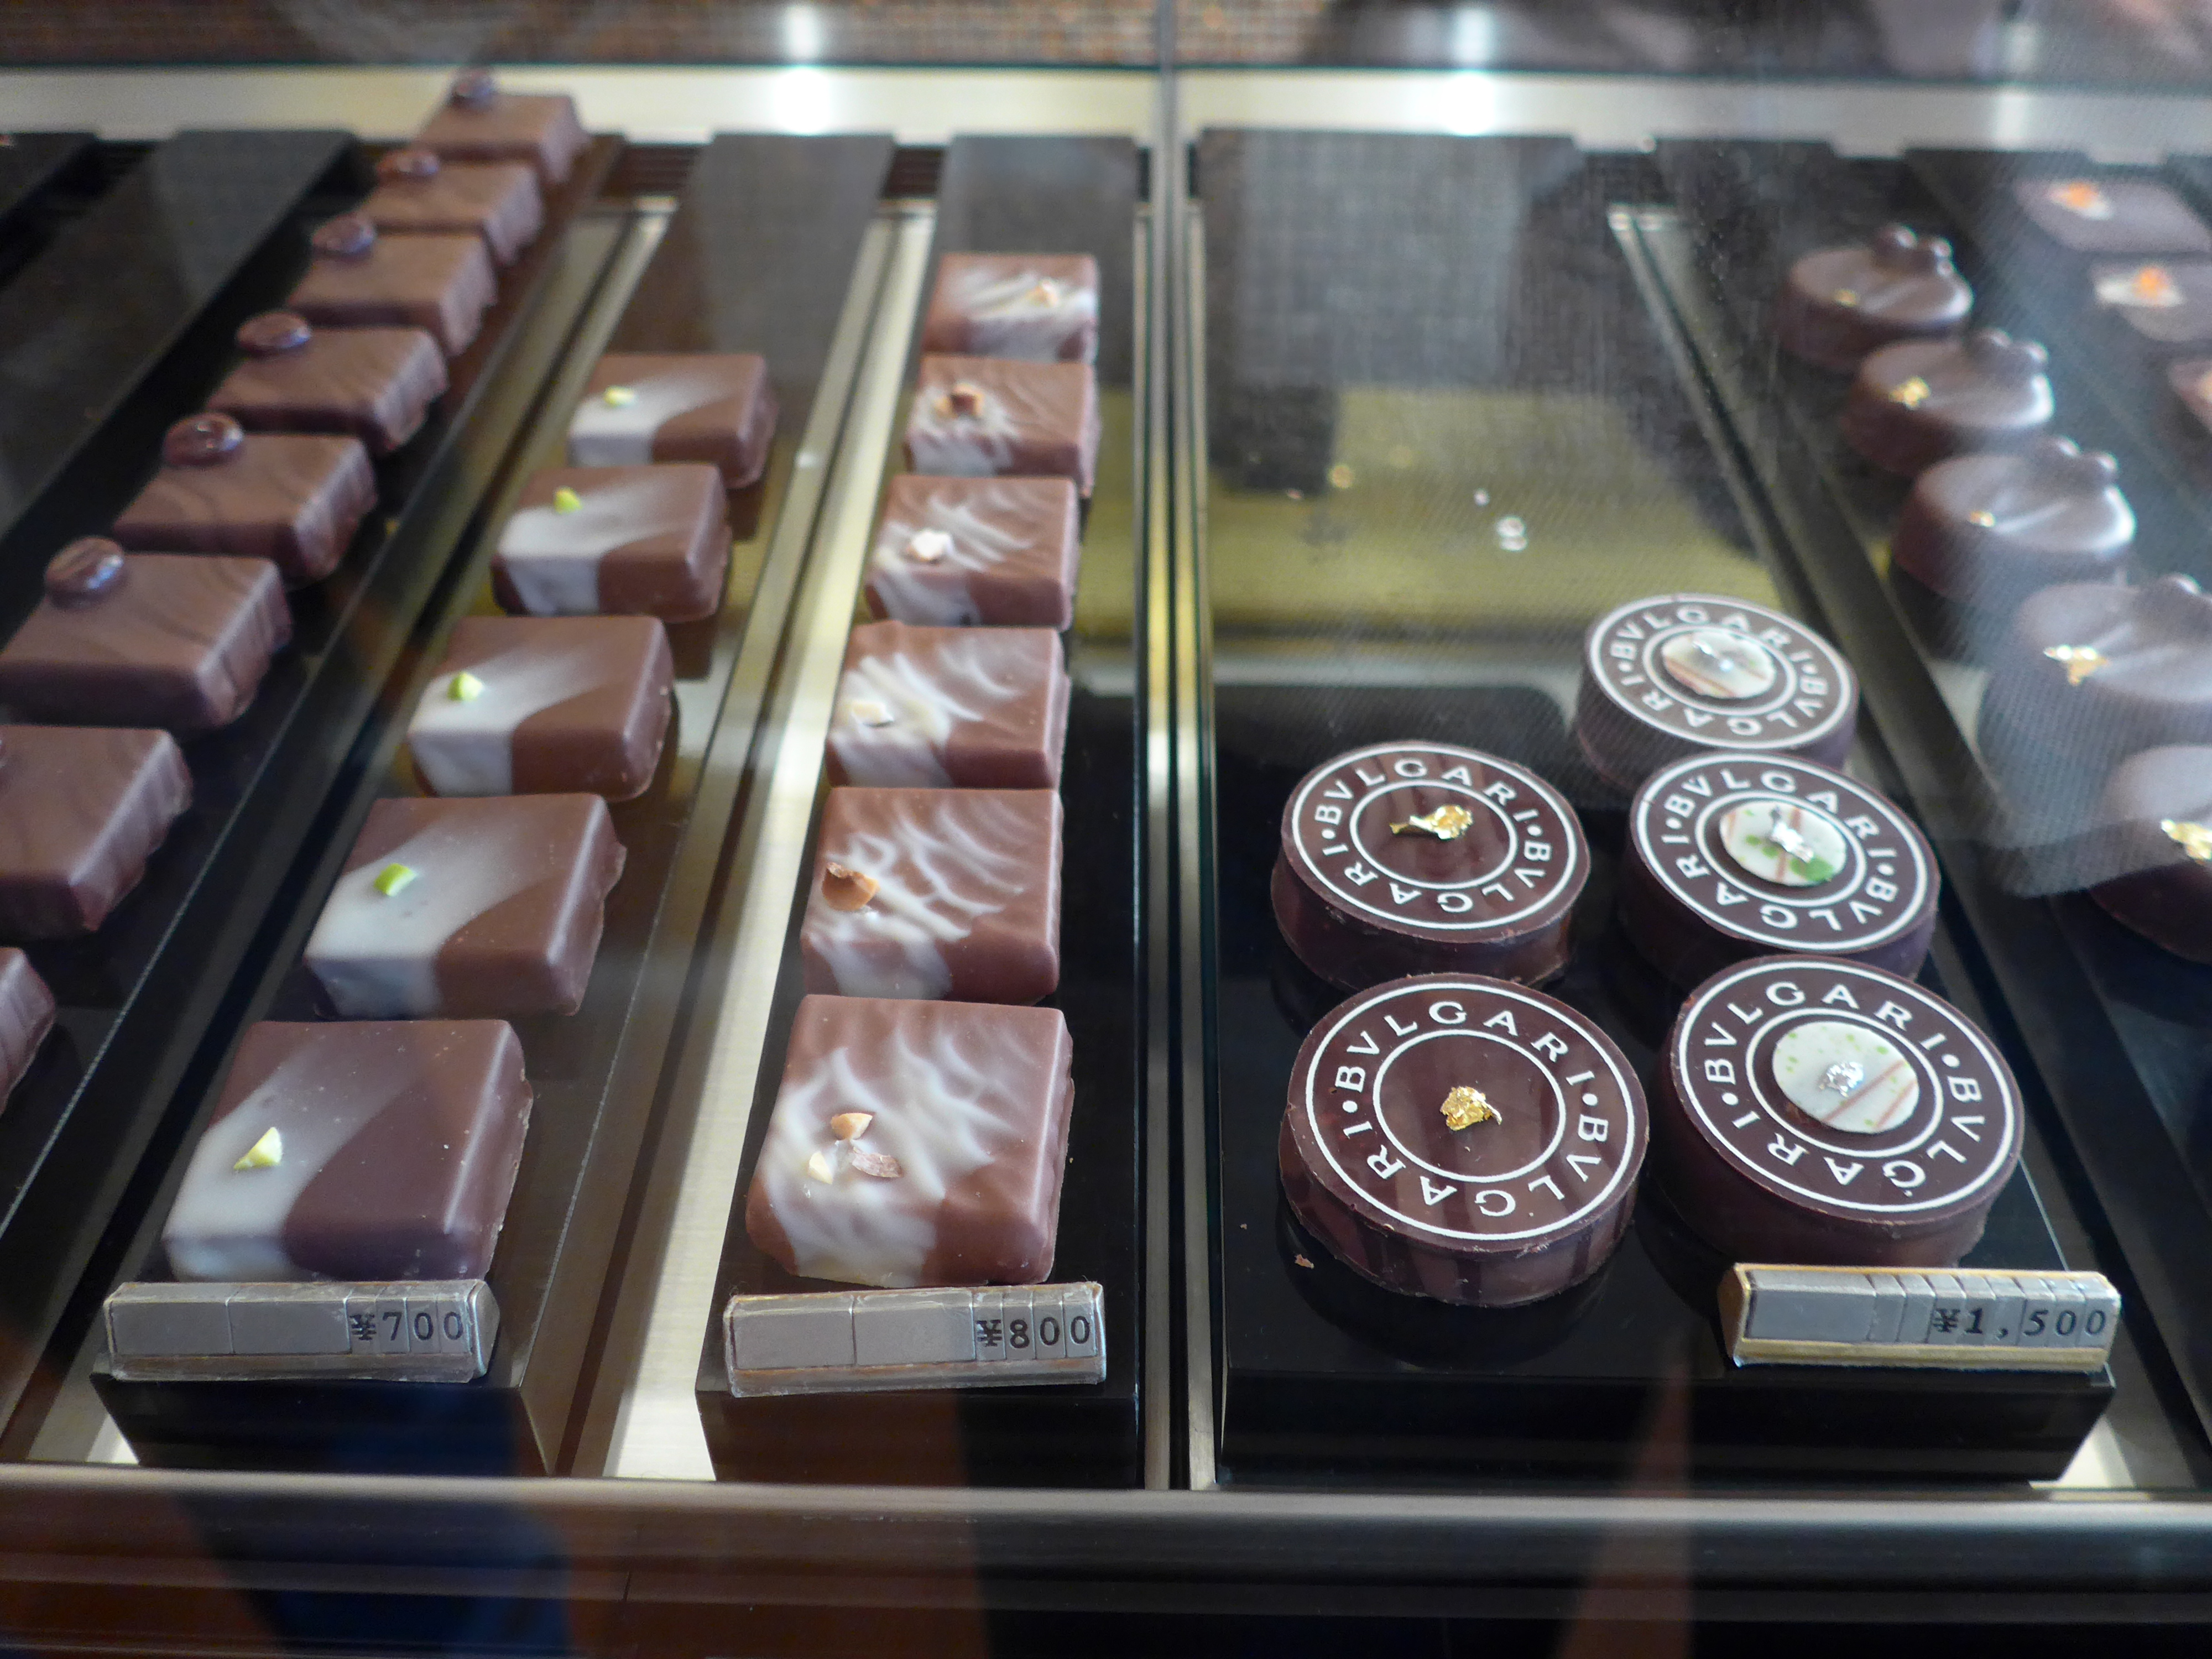 bvlgari chocolate price